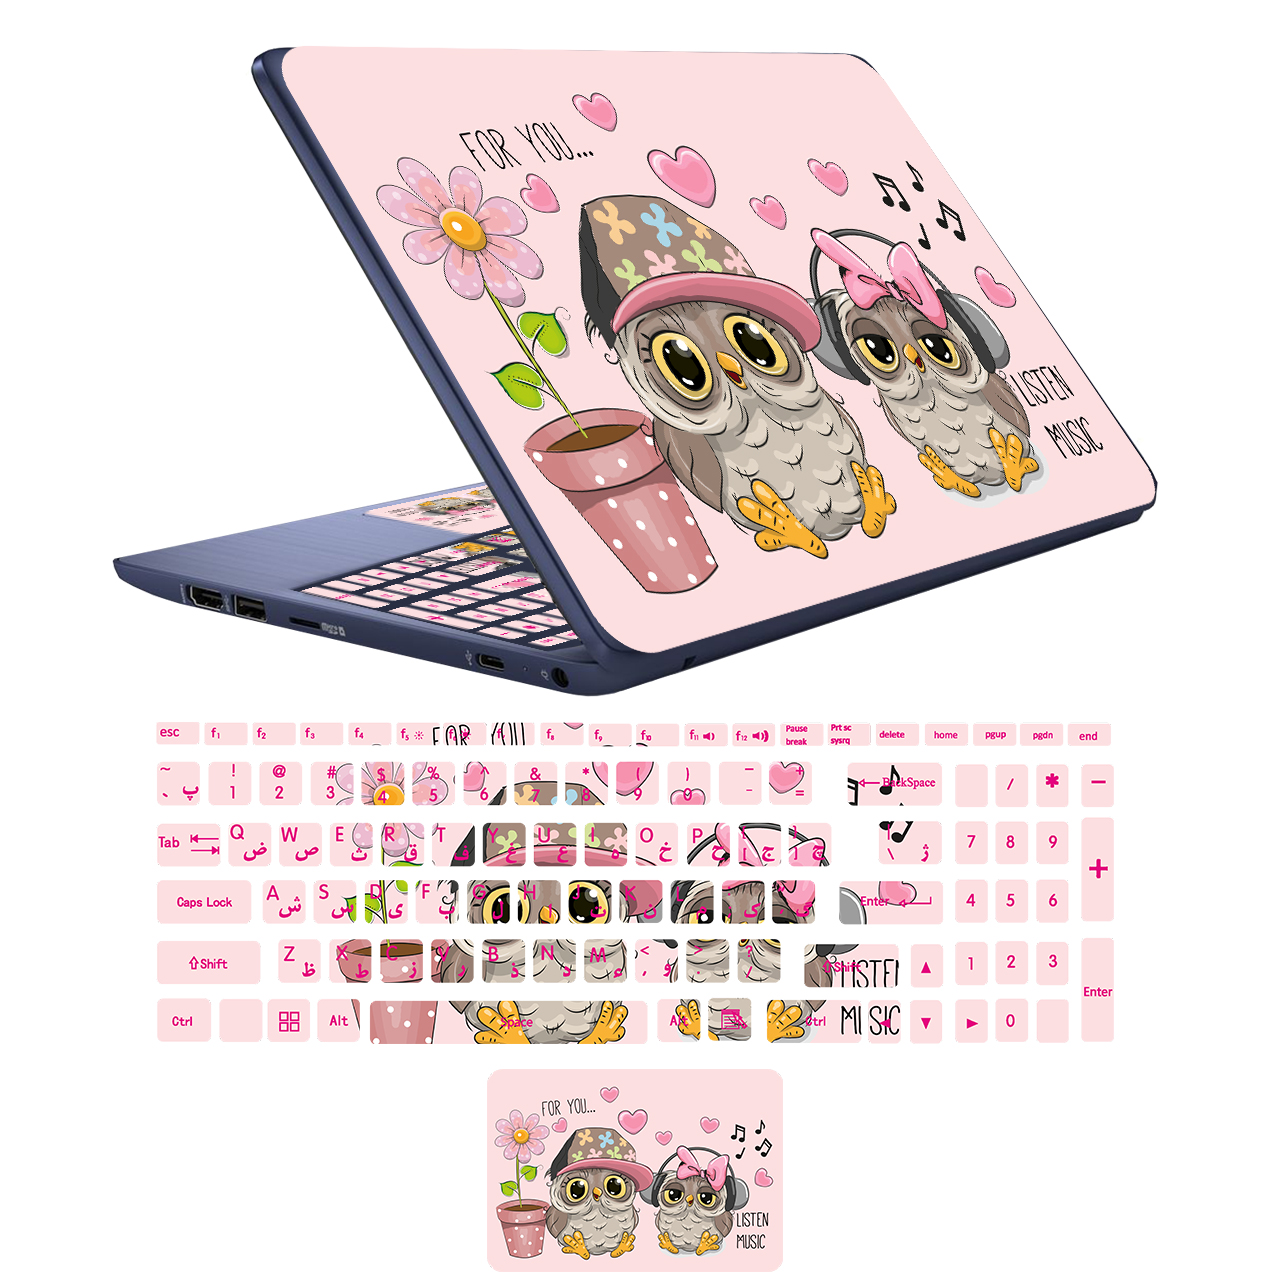 استیکر لپ تاپ مدل OWL-02 مناسب برای لپ تاپ 17 اینچ به همراه برچسب حروف فارسی کیبورد